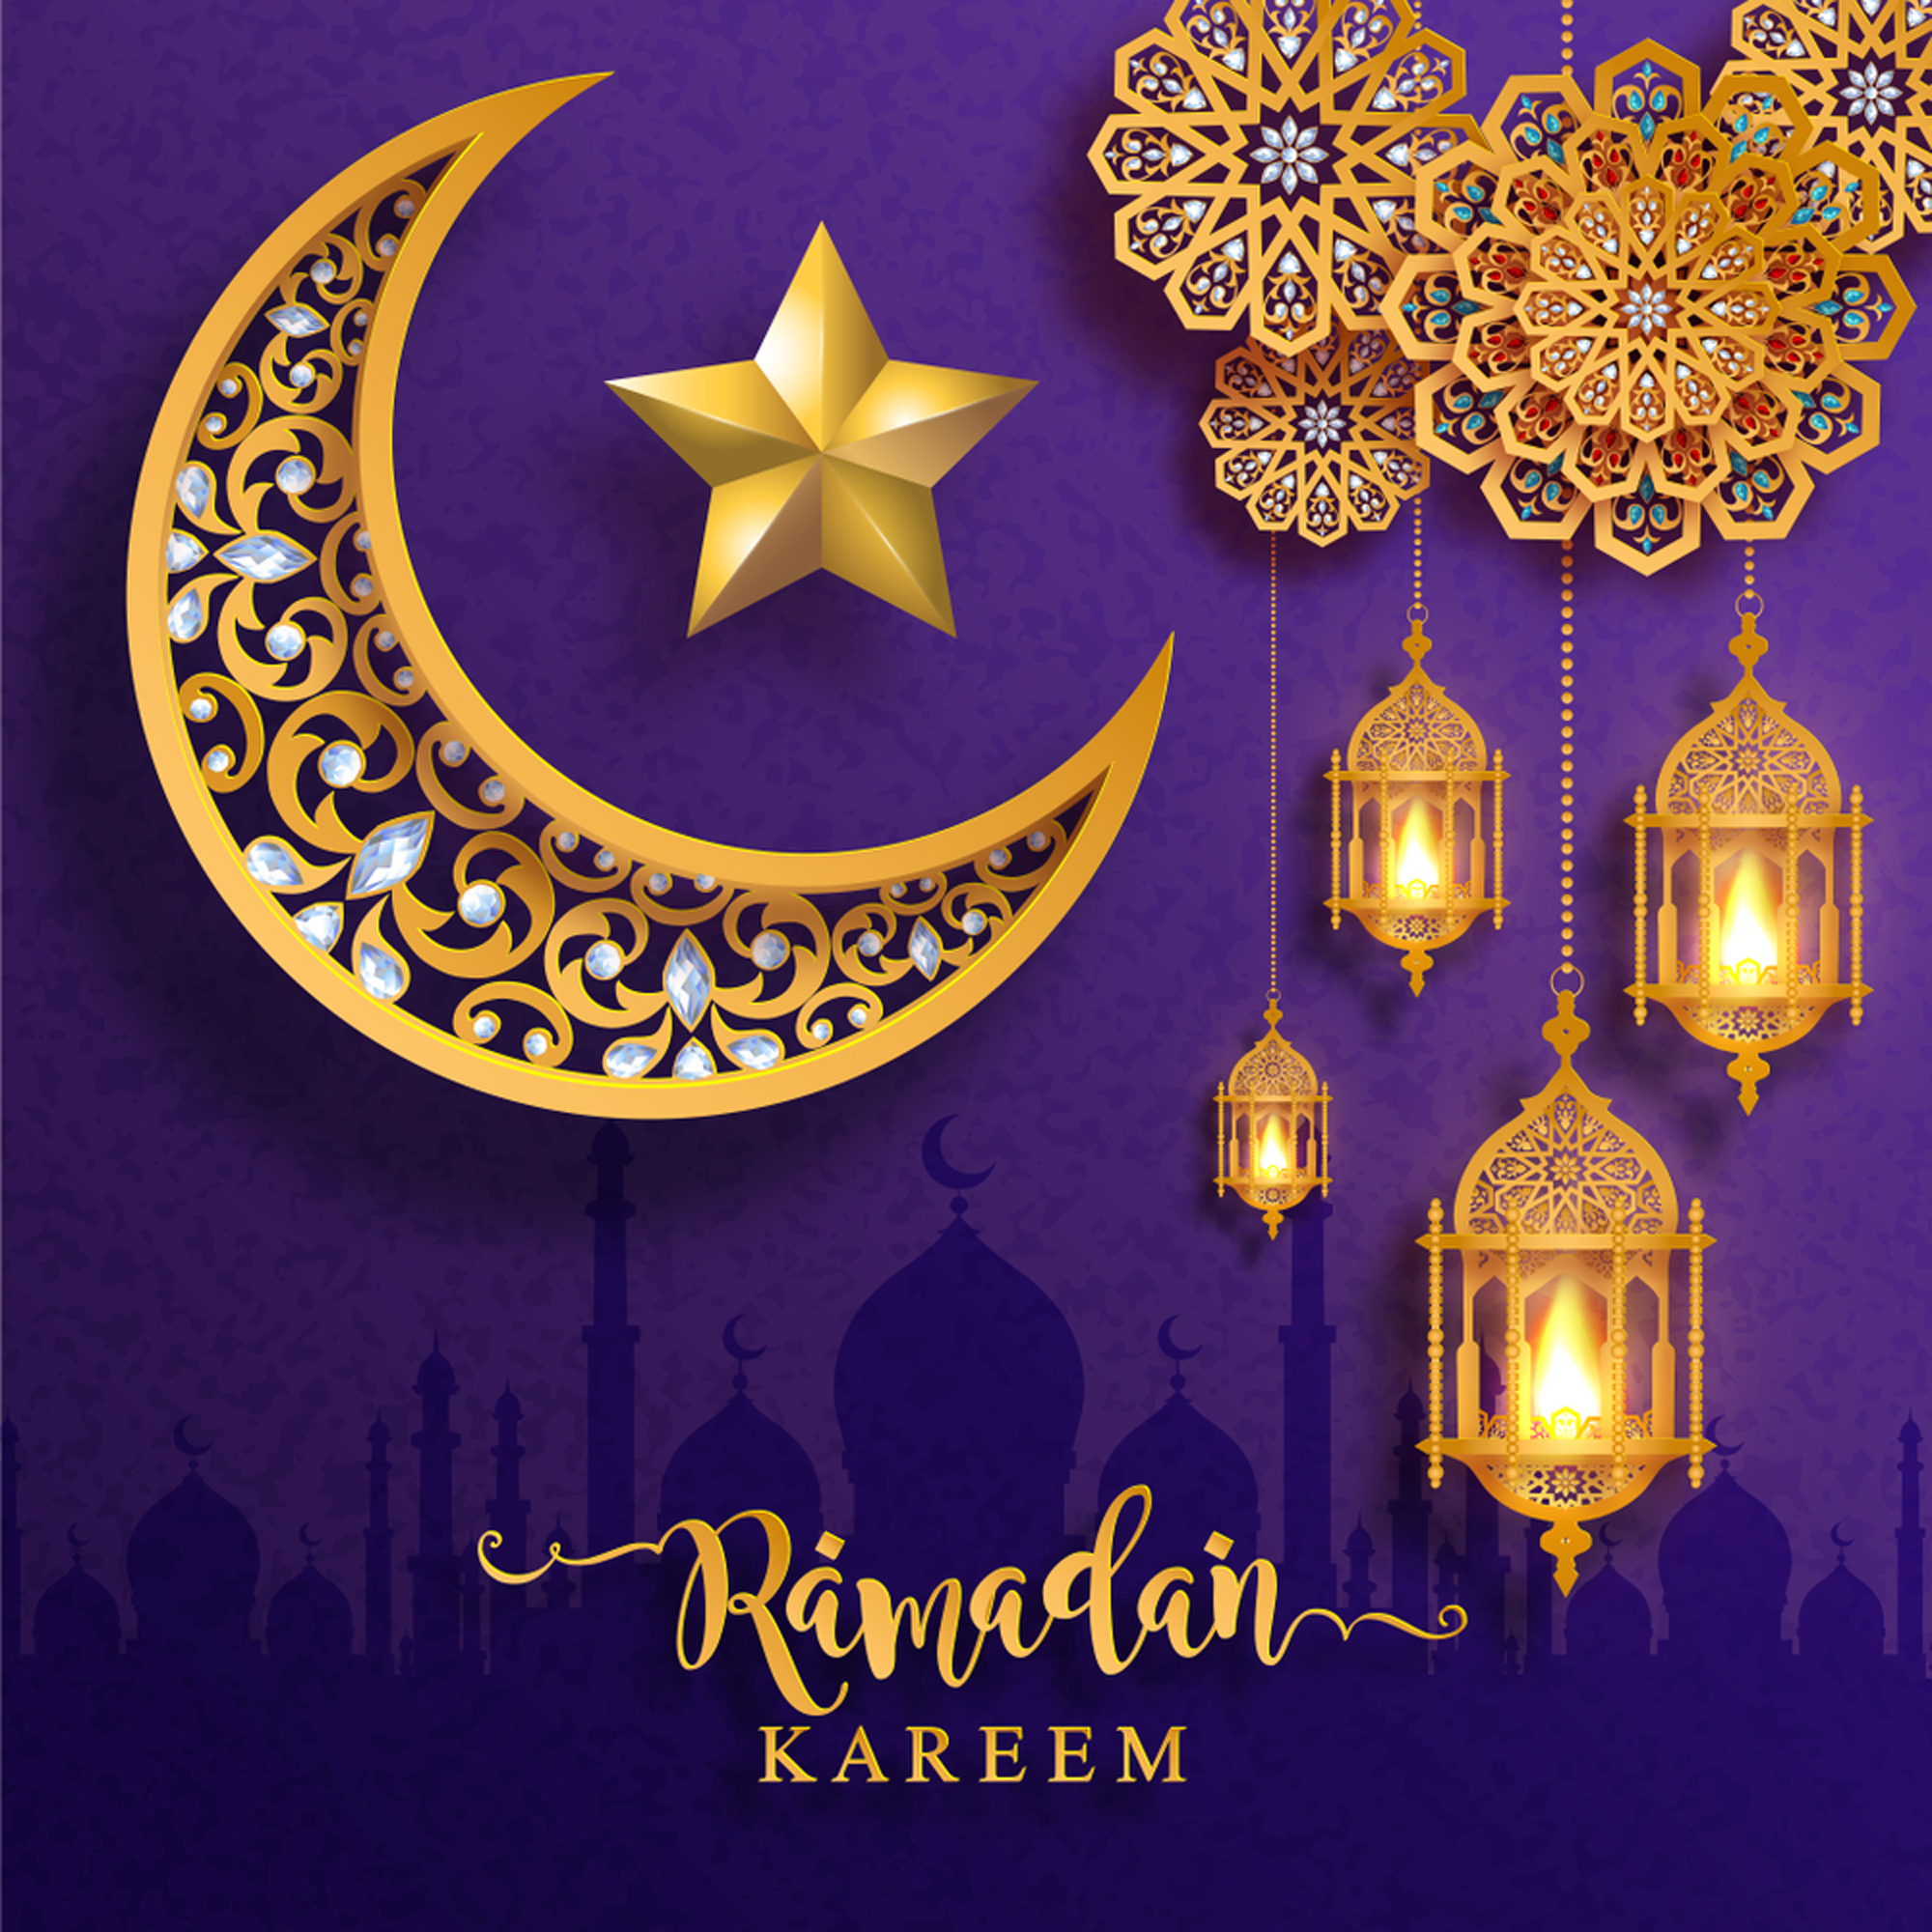 Ramadan kareem. Ramadan wishes, Ramadan mubarak wallpaper, Ramadan greetings